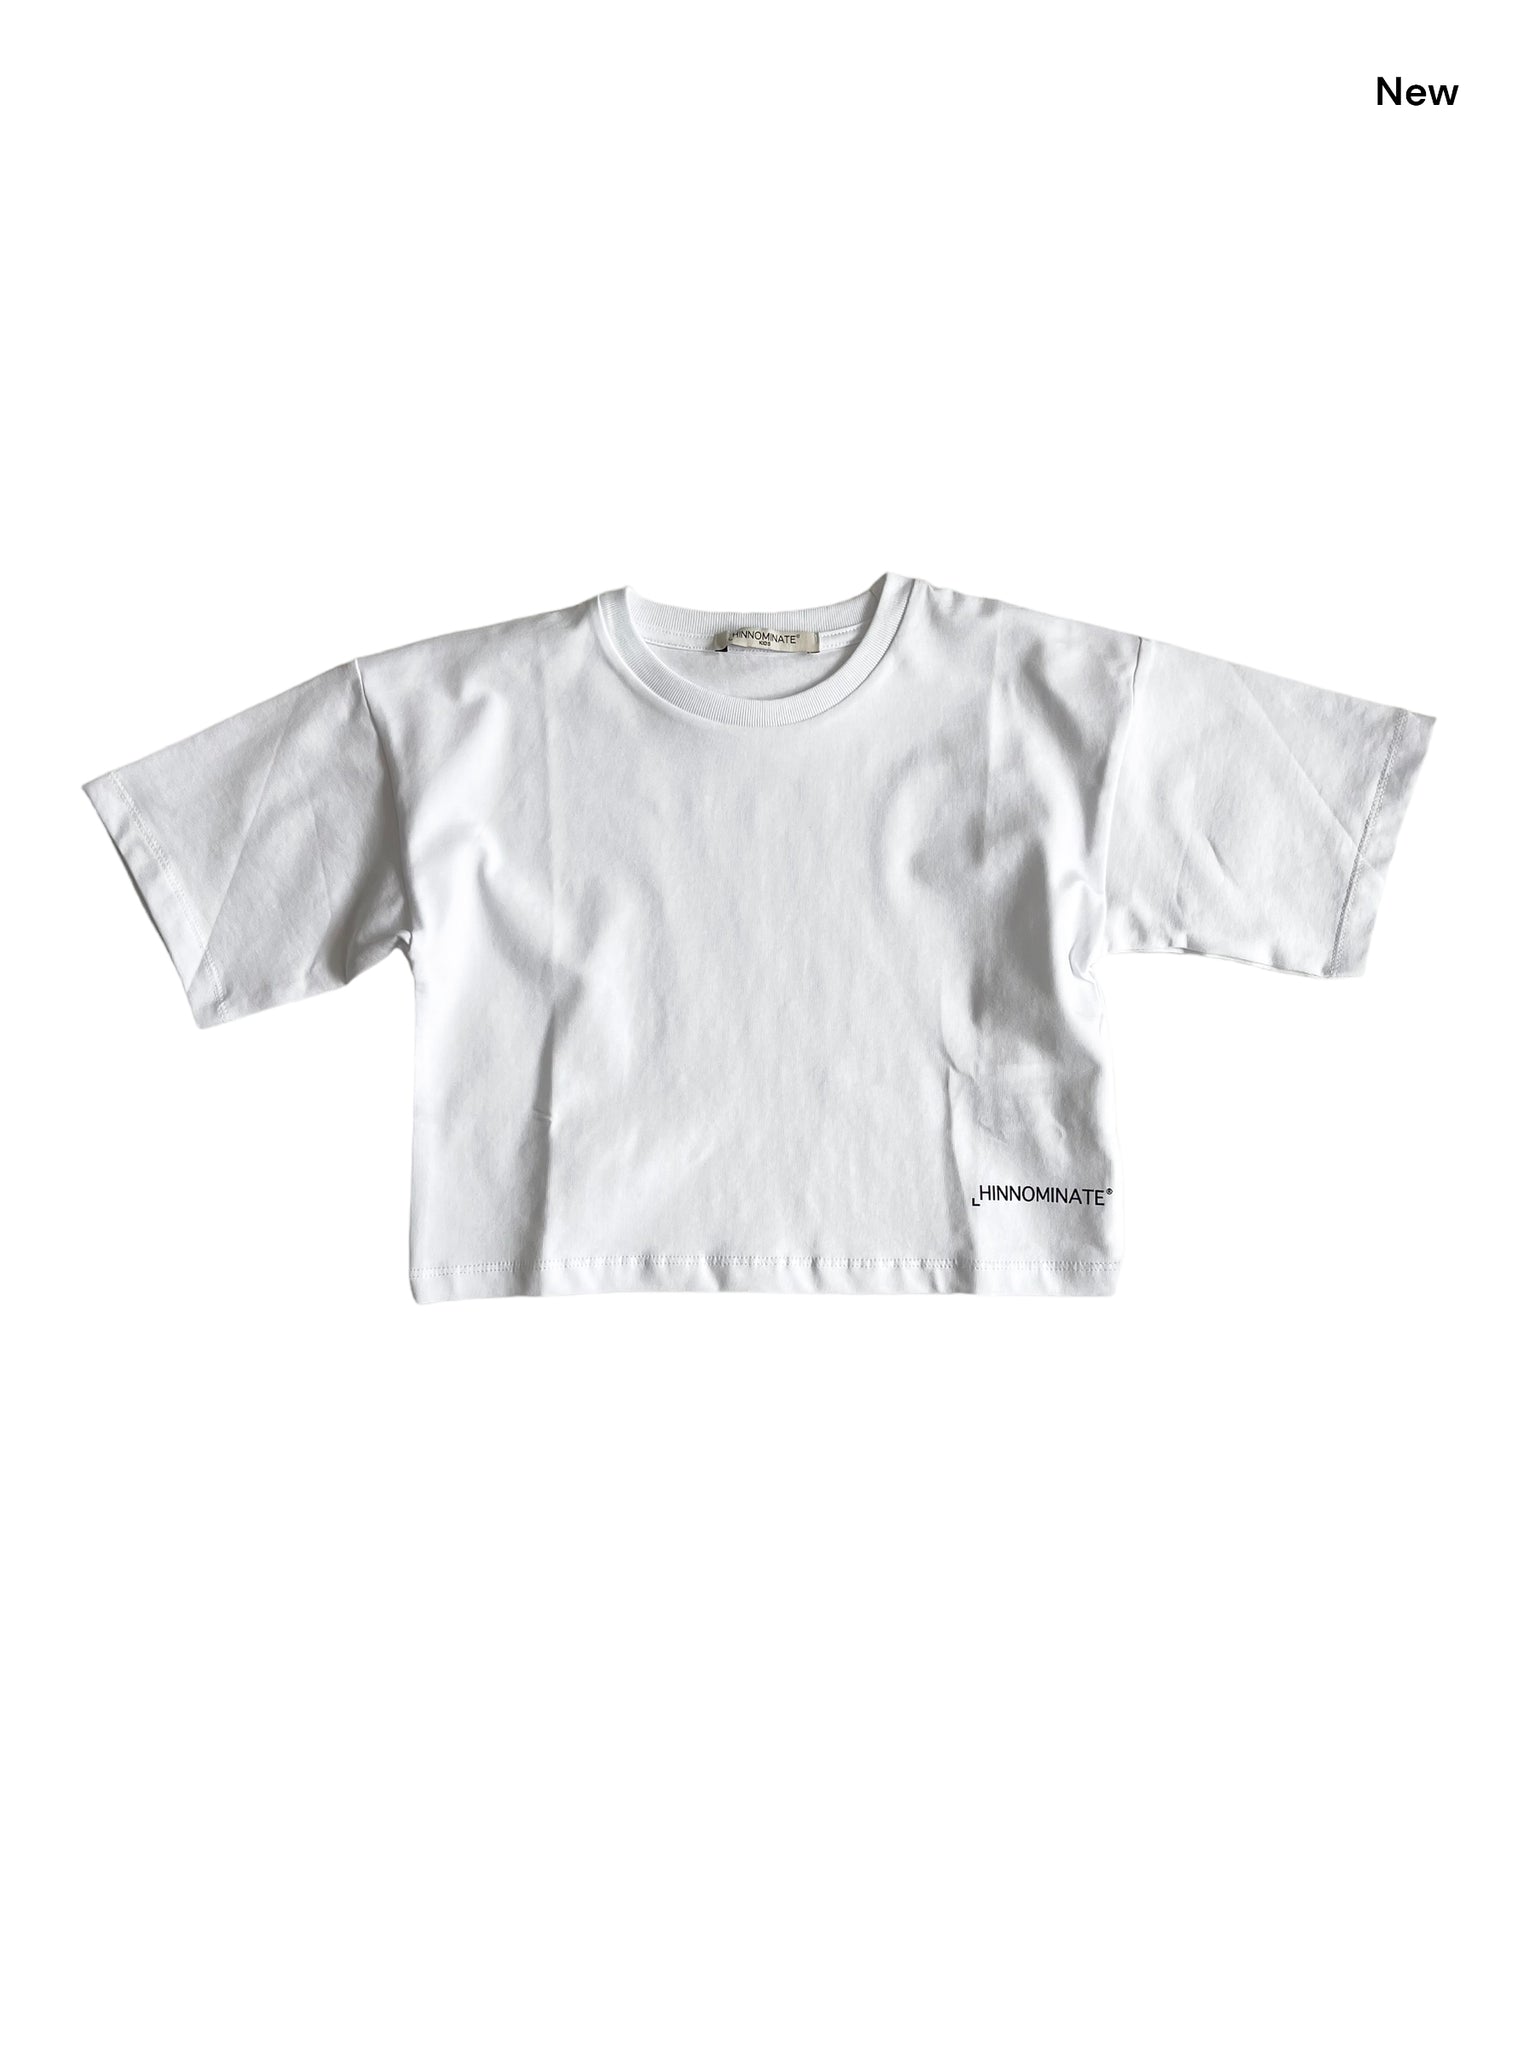 T-shirt cropped bianca con logo per bambina